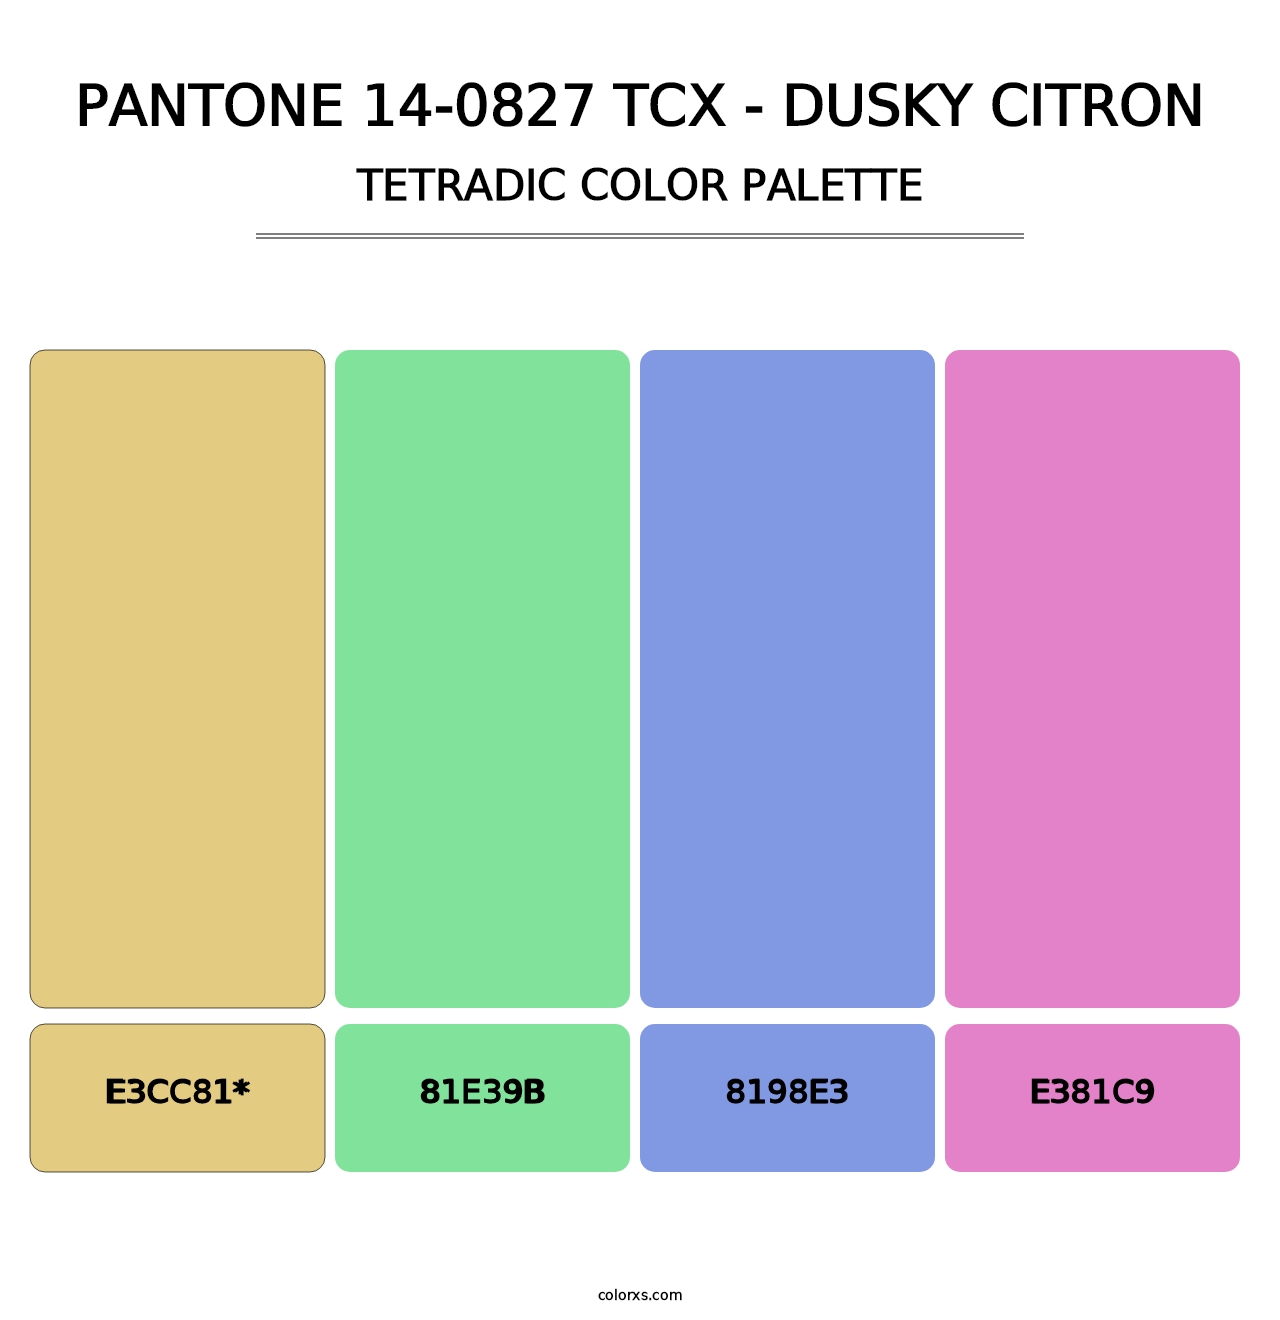 PANTONE 14-0827 TCX - Dusky Citron - Tetradic Color Palette